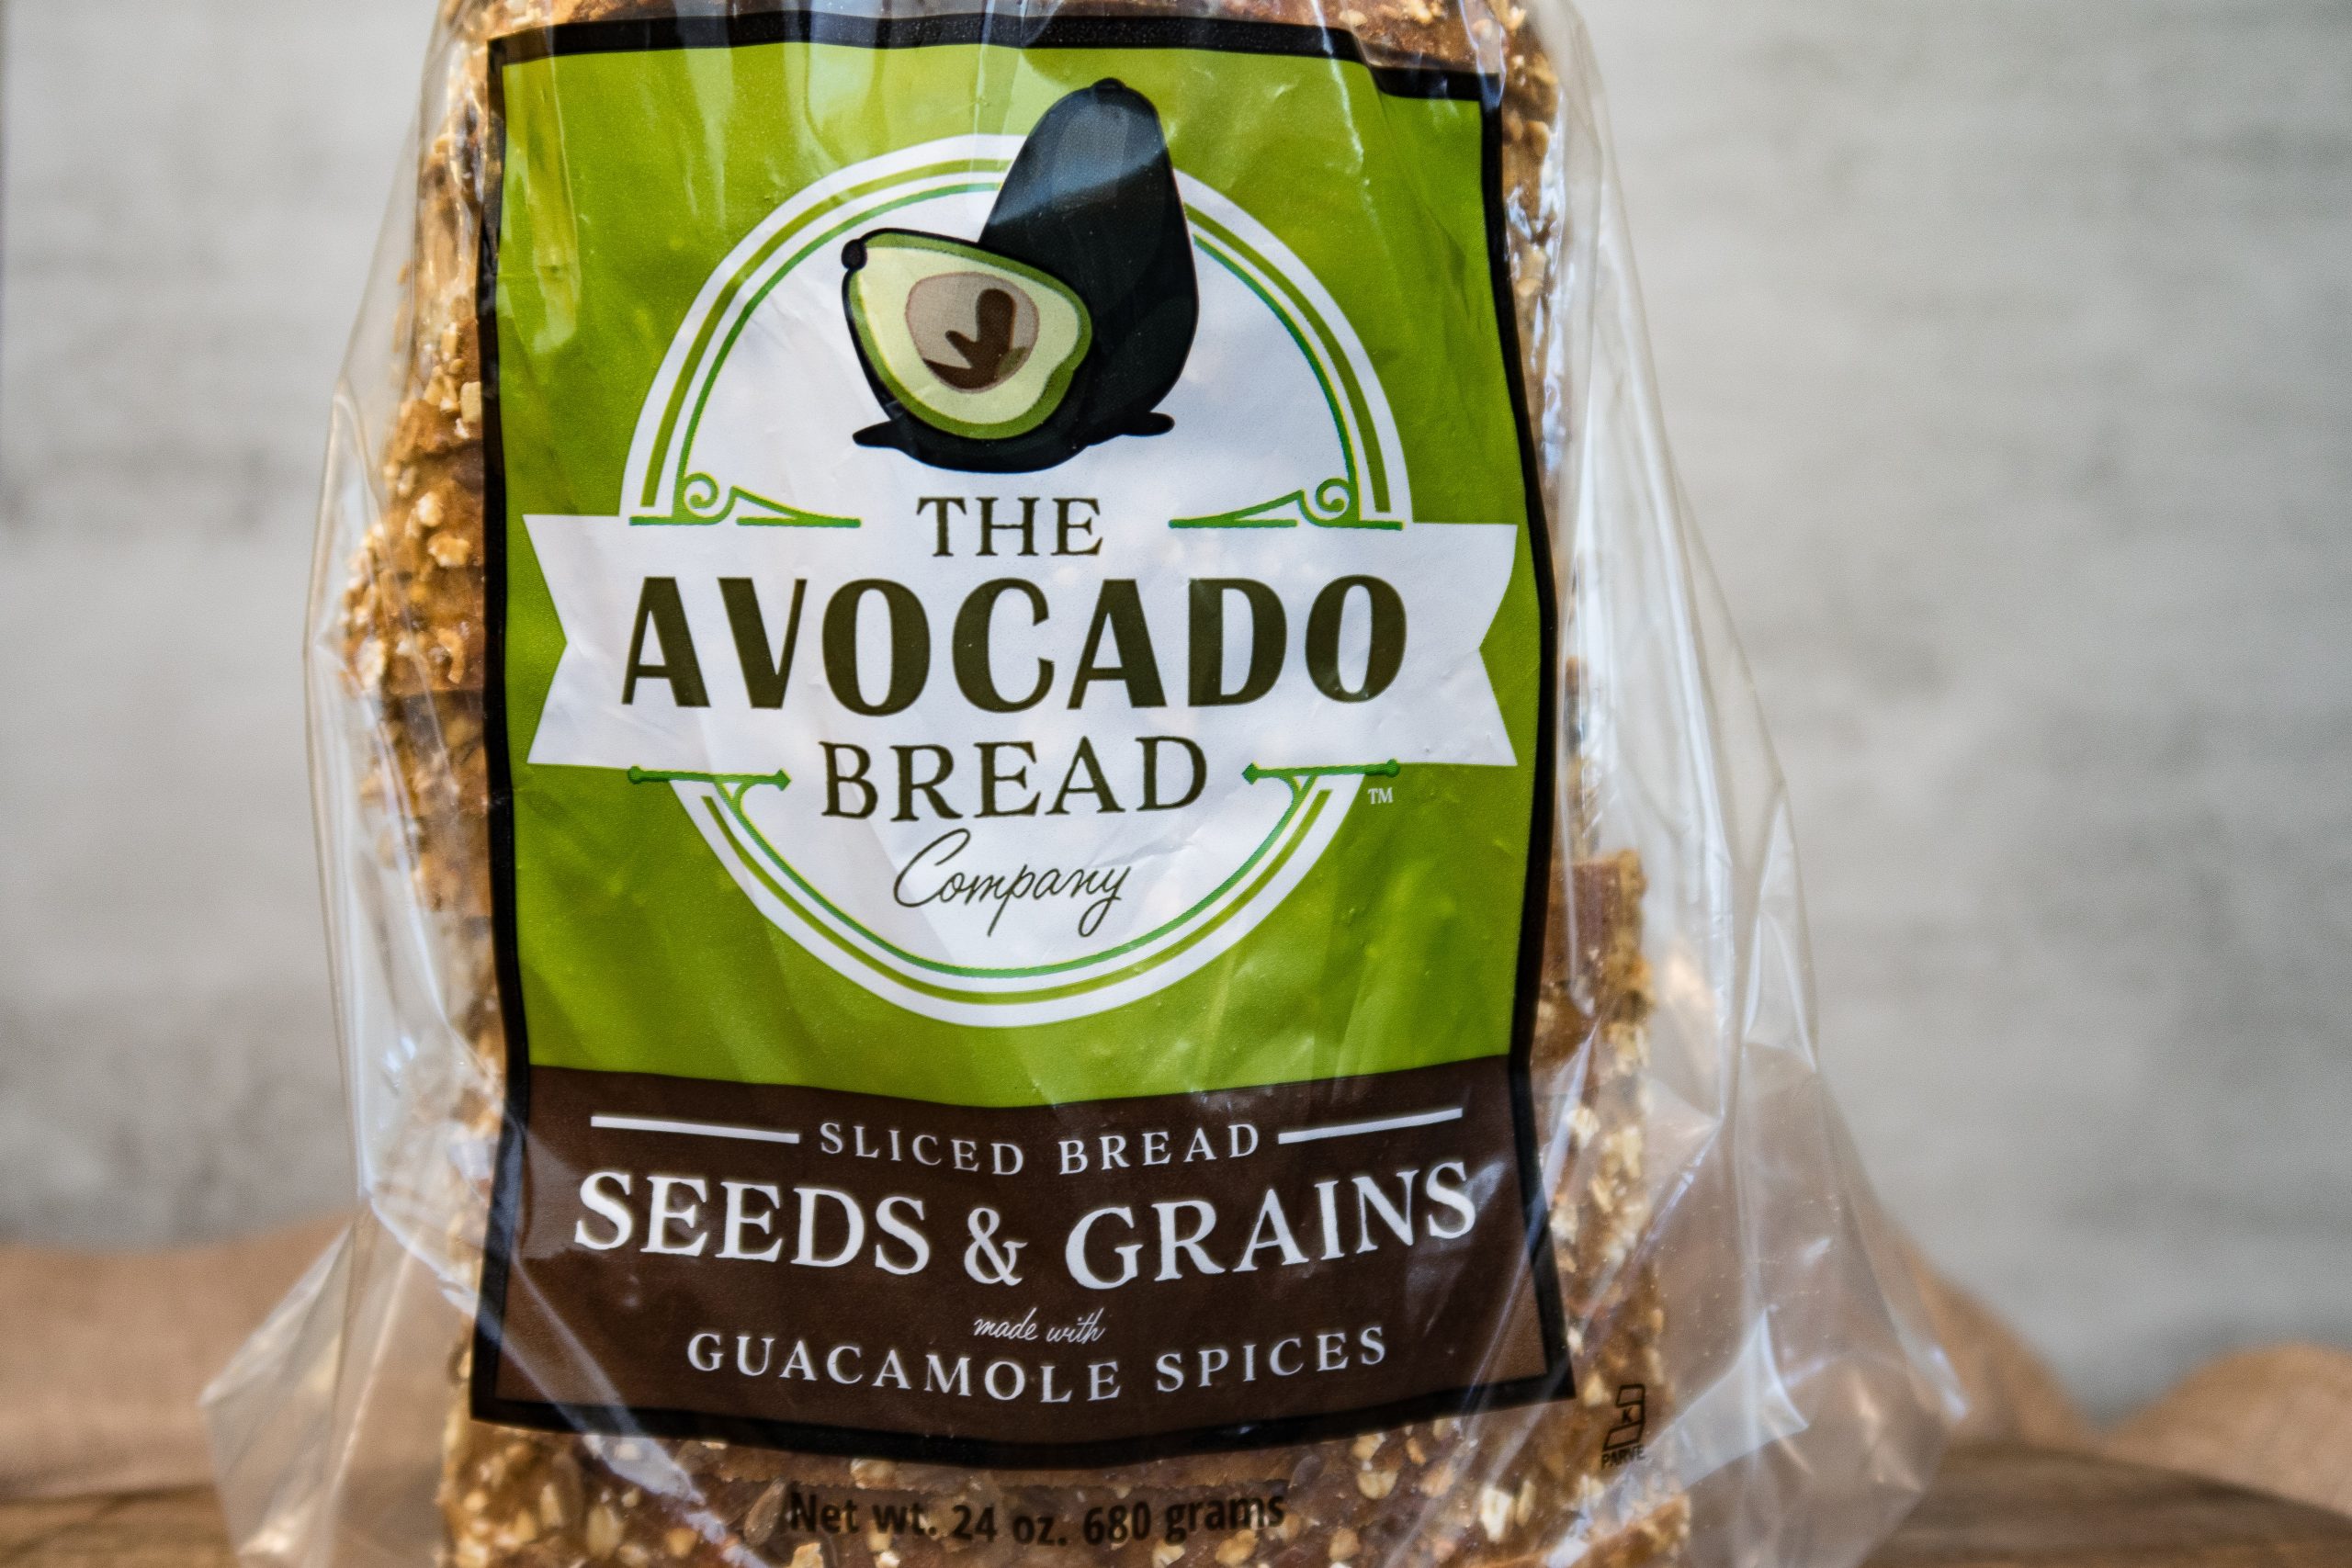 The Avocado Bread Company